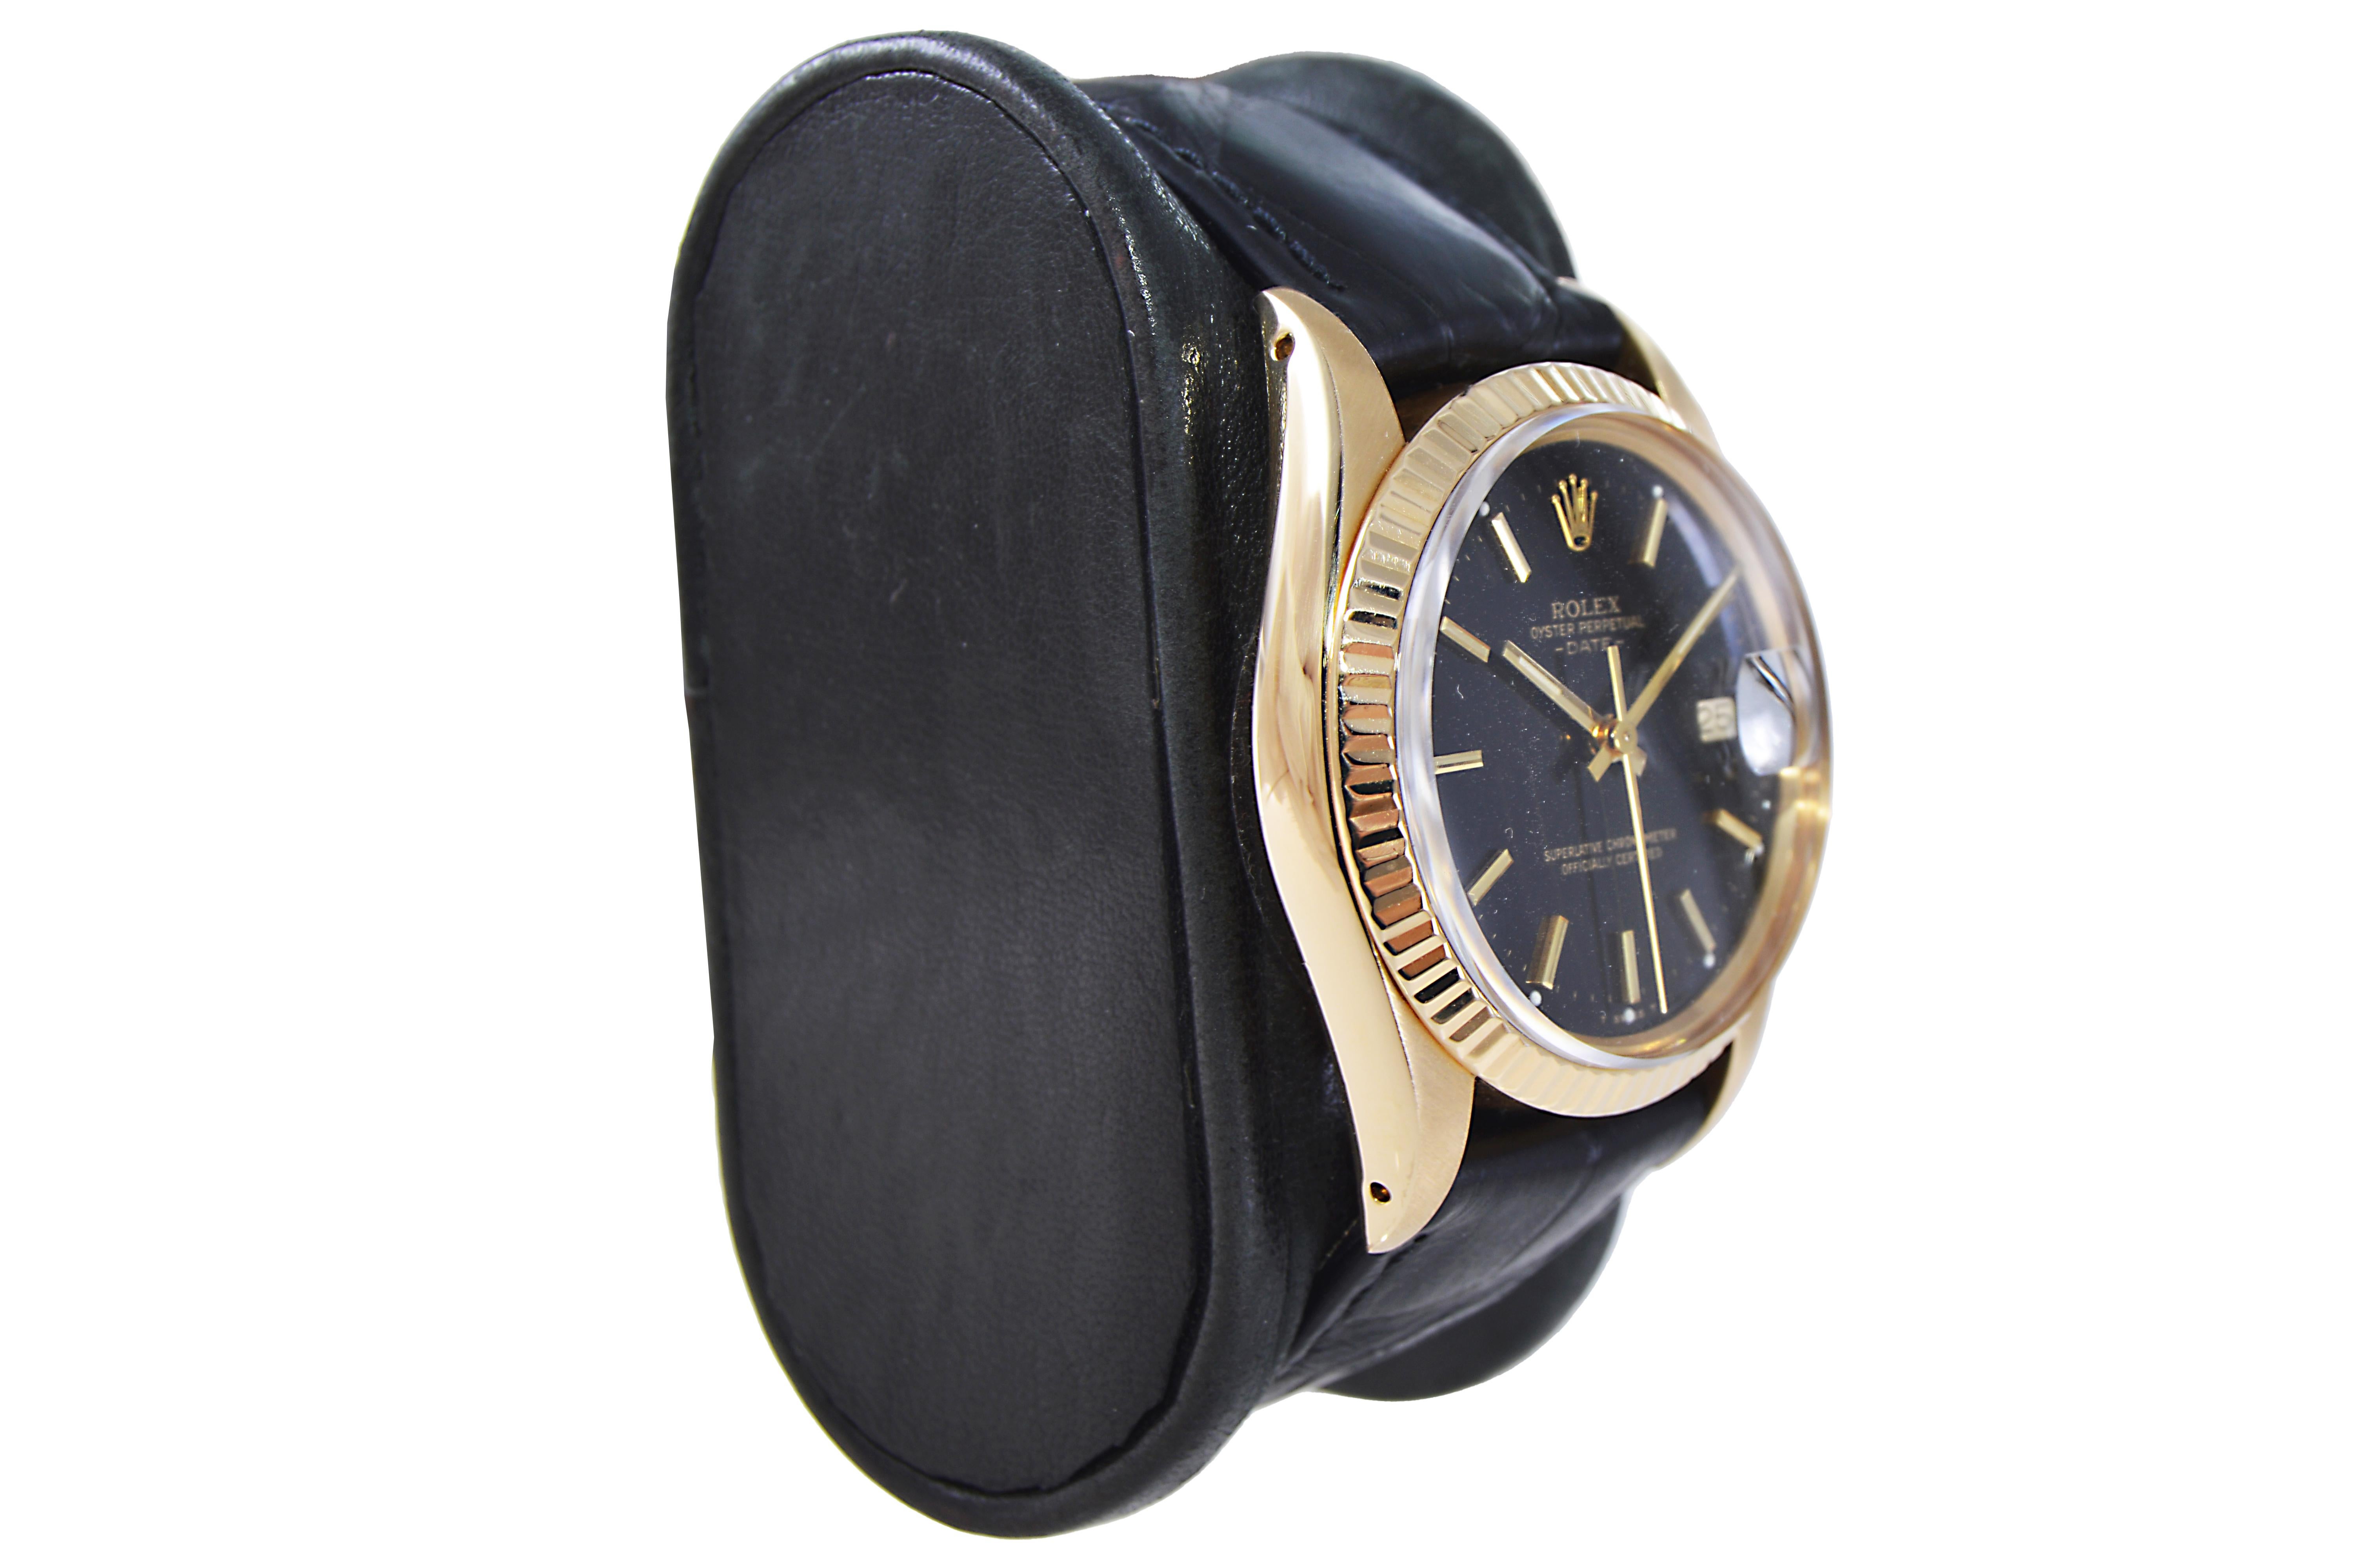 FABRIK / HAUS: Rolex Watch Company
STIL / REFERENZ: Oyster Perpetual Date / Referenz 15038
METALL / MATERIAL: 18KT Gelbgold
CIRCA / JAHR: Mitte. 1980's
ABMESSUNGEN / GRÖSSE: Länge 43mm X Durchmesser 35mm
UHRWERK / KALIBER: Ewiger Aufzug / 26 Jewels